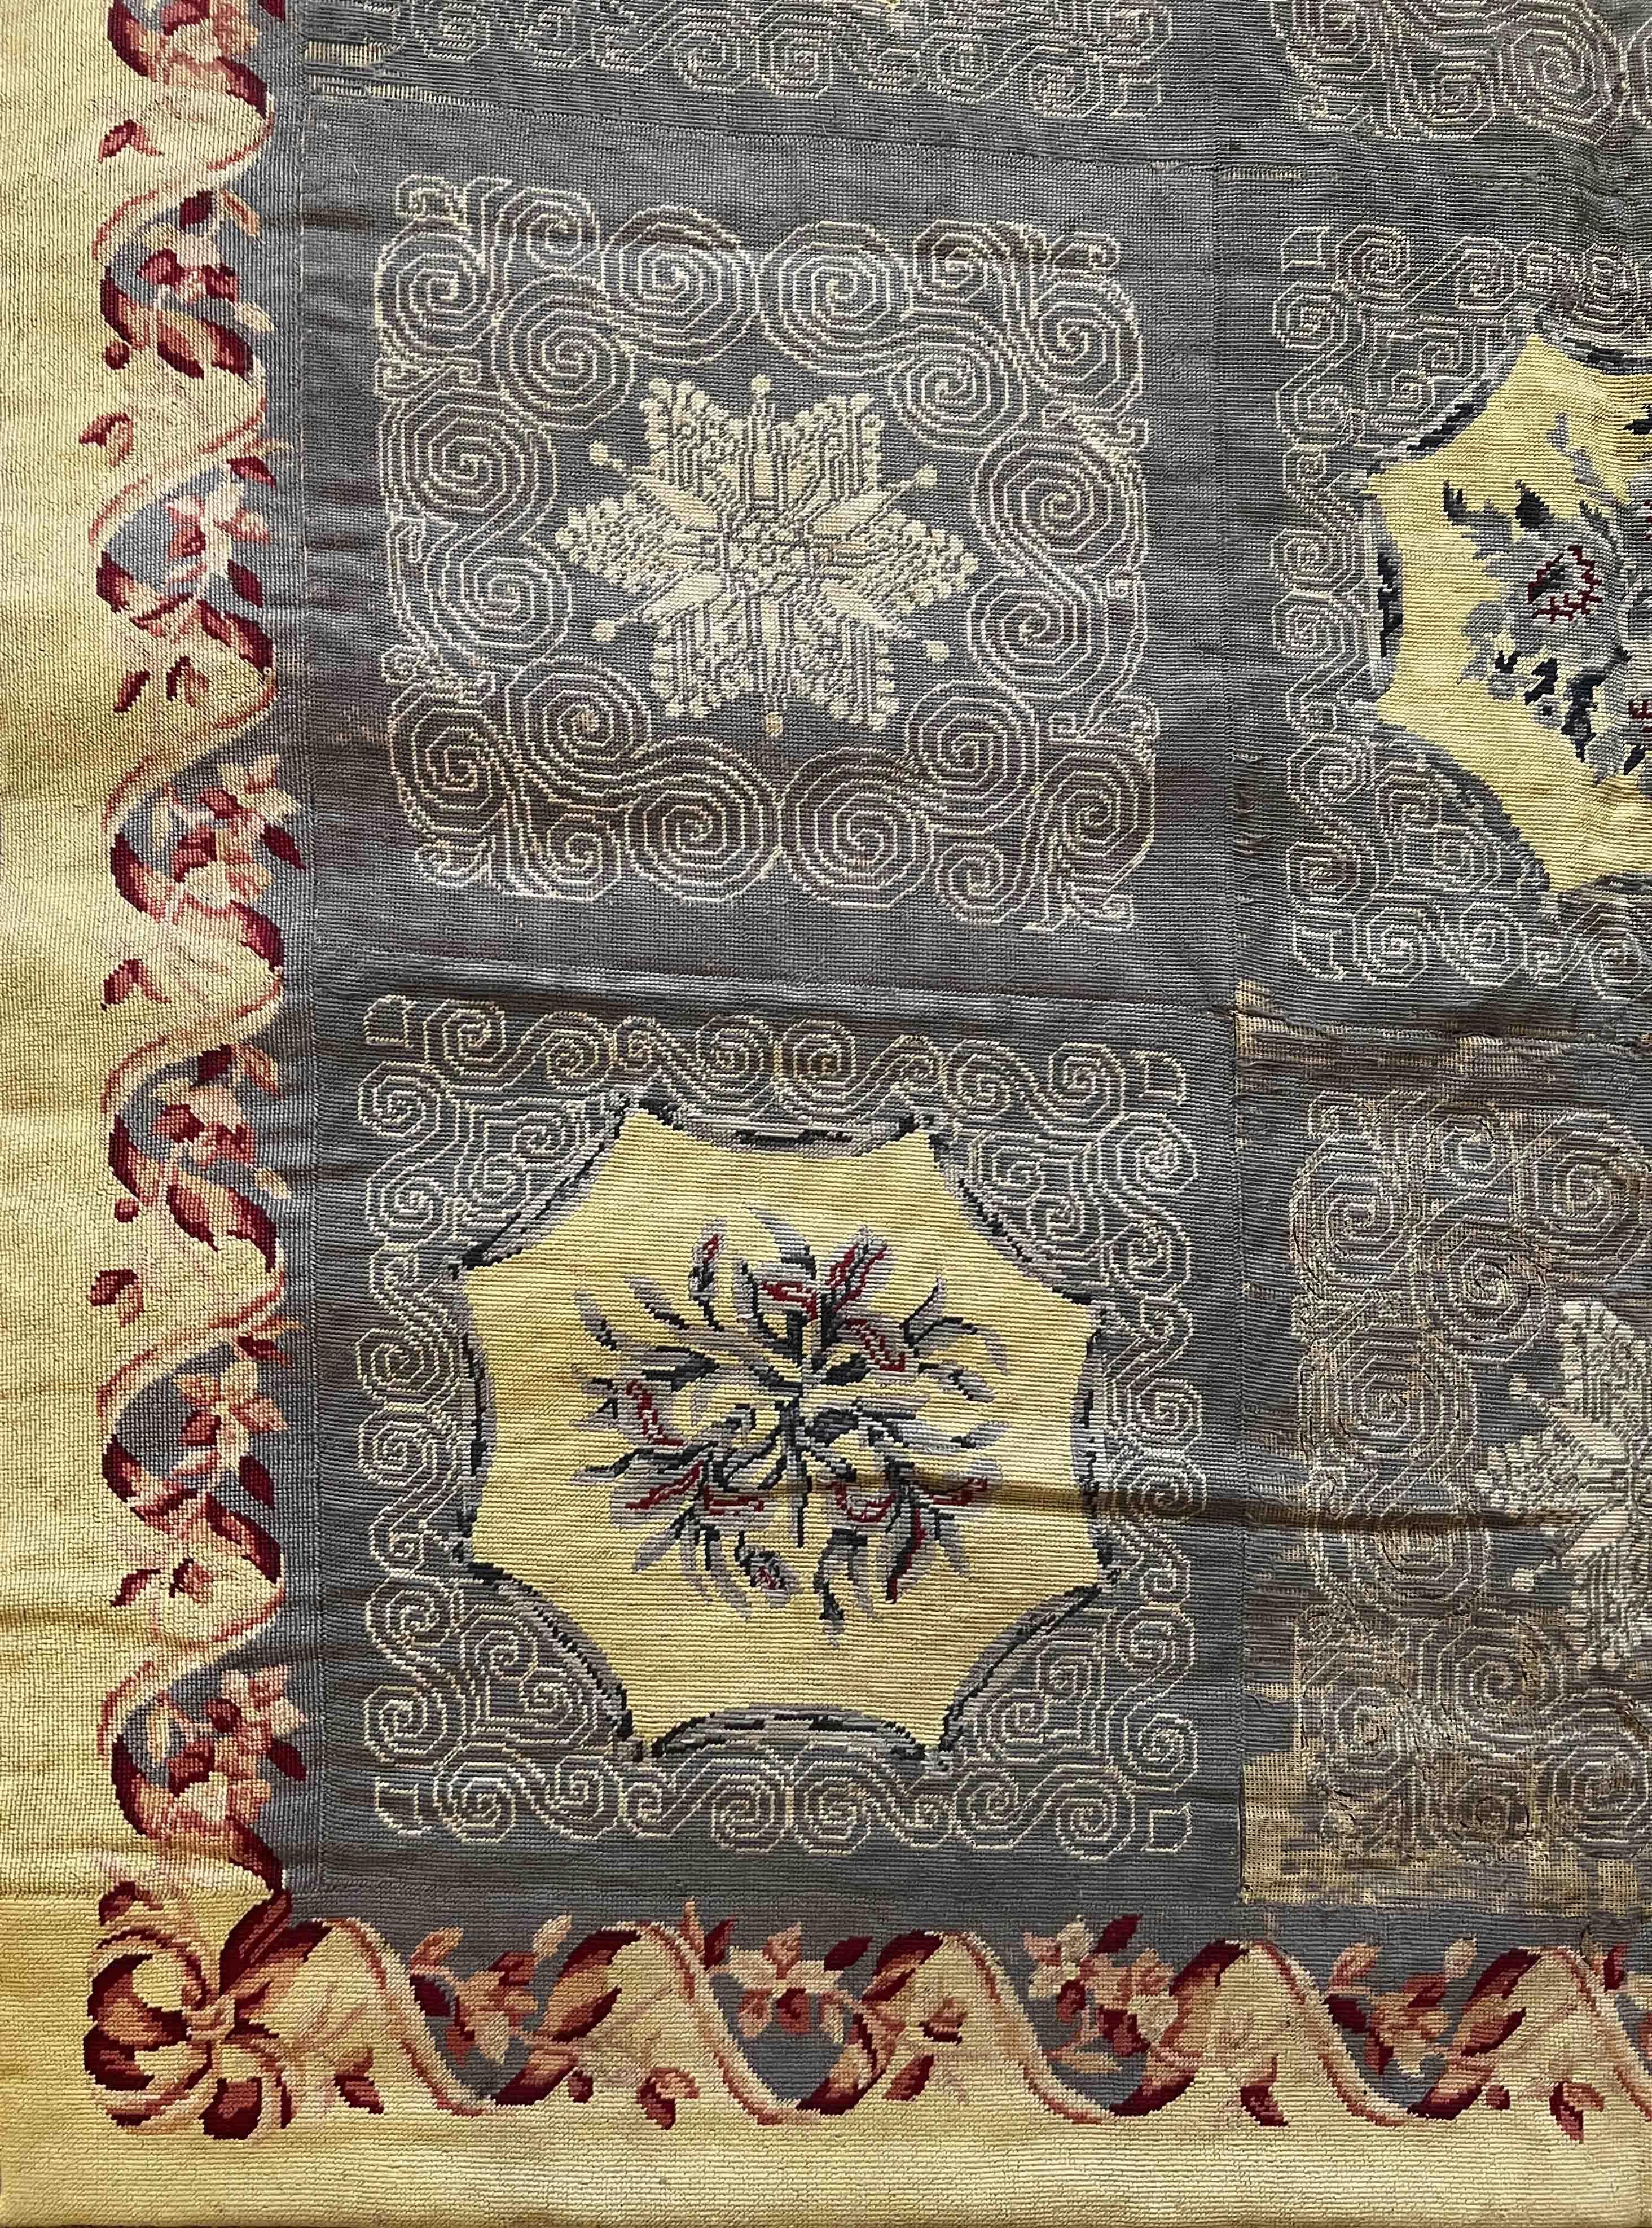 Ein sehr hübscher Nadelspielteppich aus dem 19. Jahrhundert mit sehr hübschen frischen Farben.

Dank unserer Restaurierungs- und Konservierungswerkstatt und unserem Know-how, 
freuen wir uns, Ihnen Kunstwerke aus Stoff wie die Tapisserie